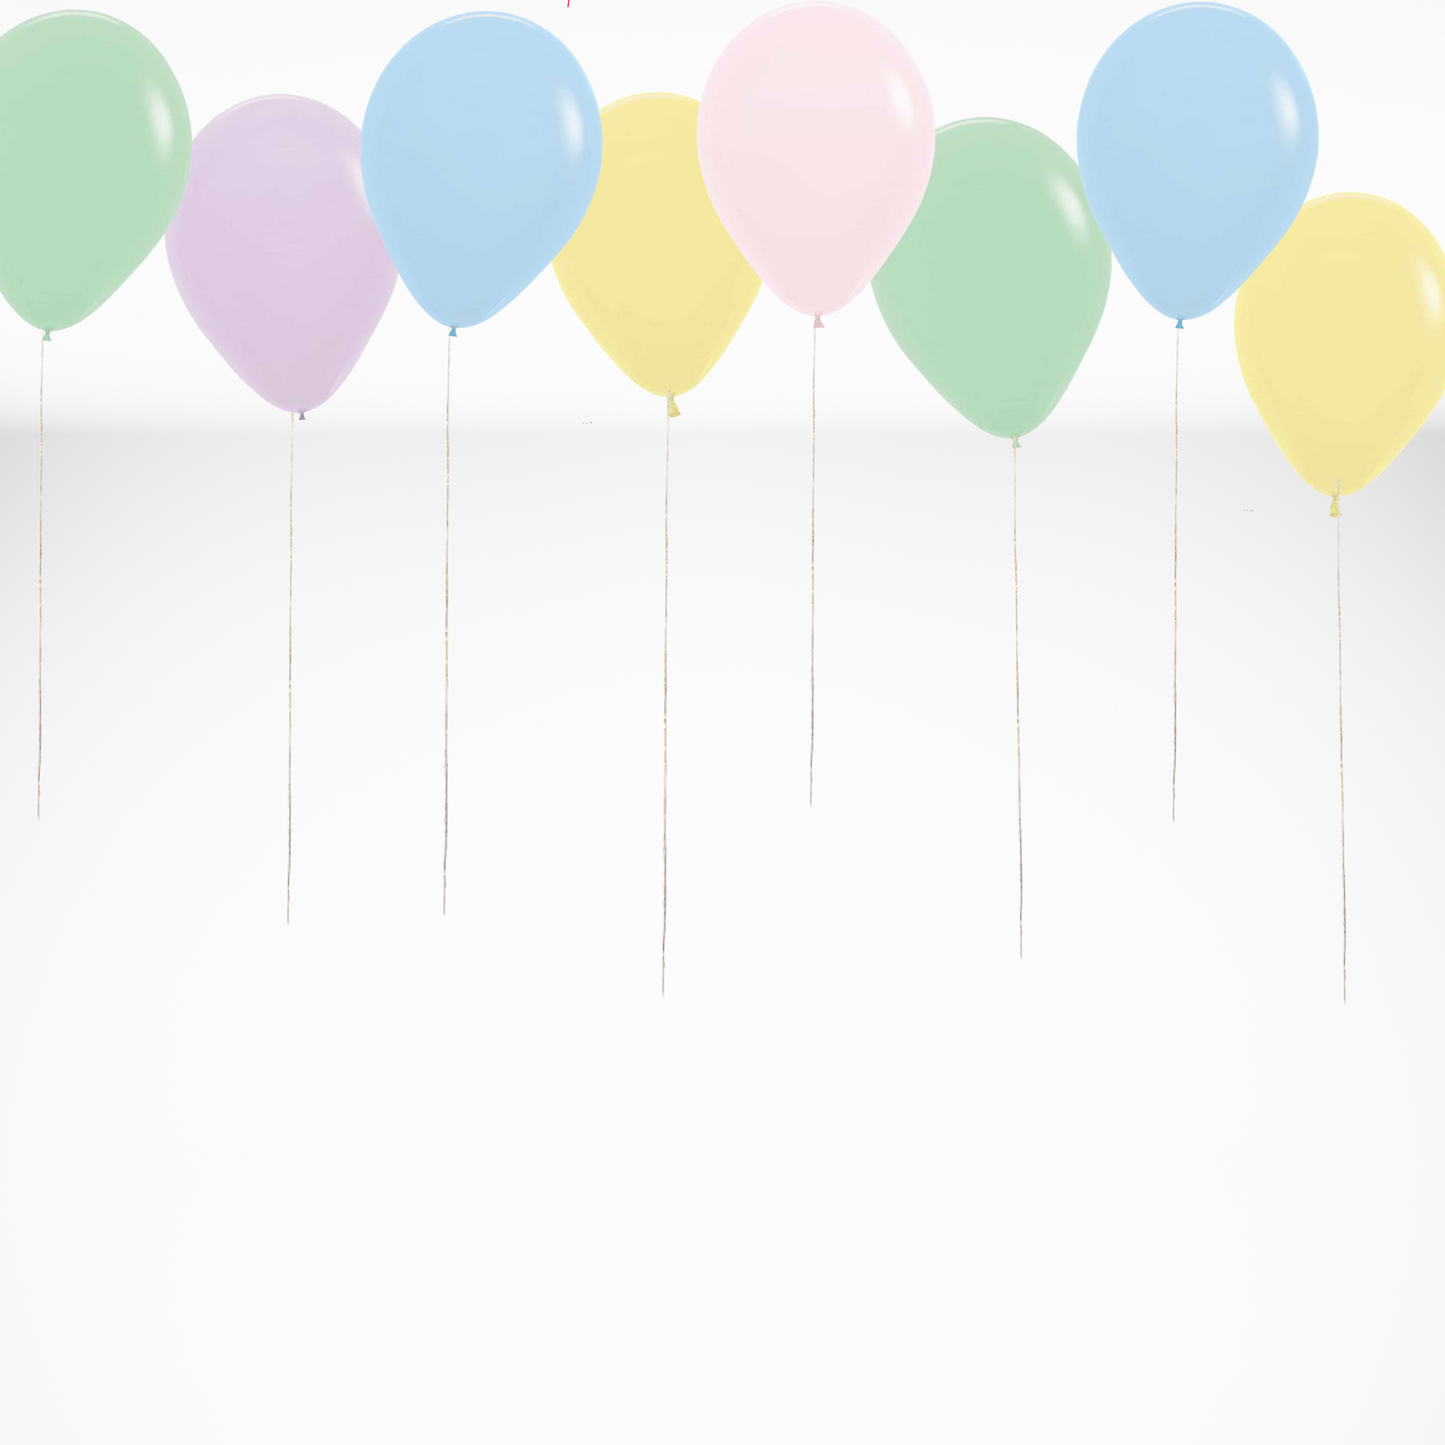 Ballons à l'hélium pour le plafond à couleurs pastels